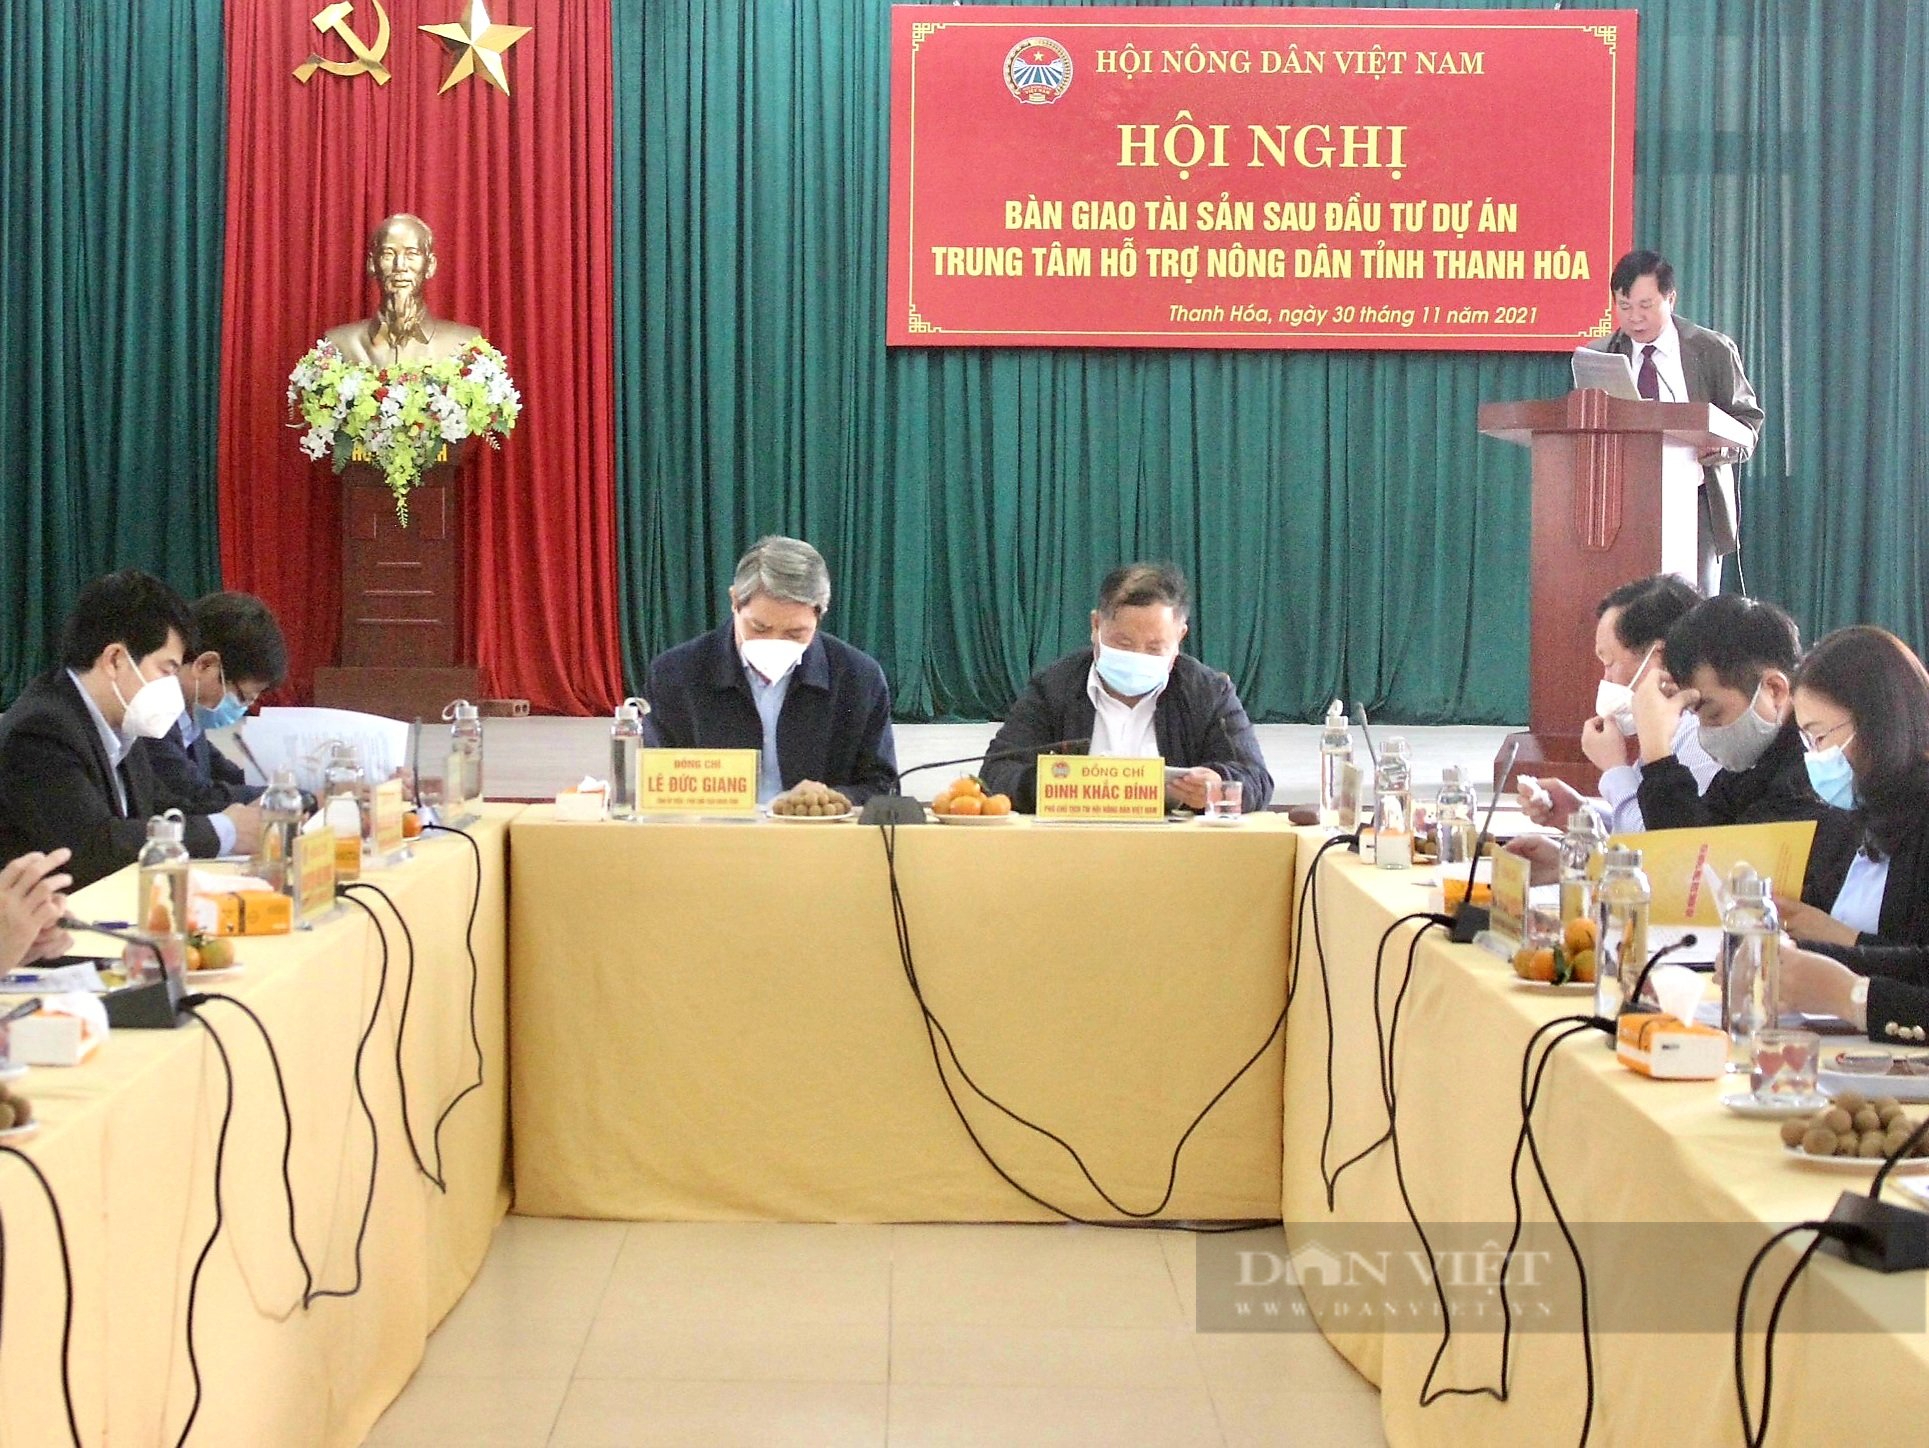 Trung ương Hội Nông dân Việt Nam bàn giao tài sản sau dự án Trung ...